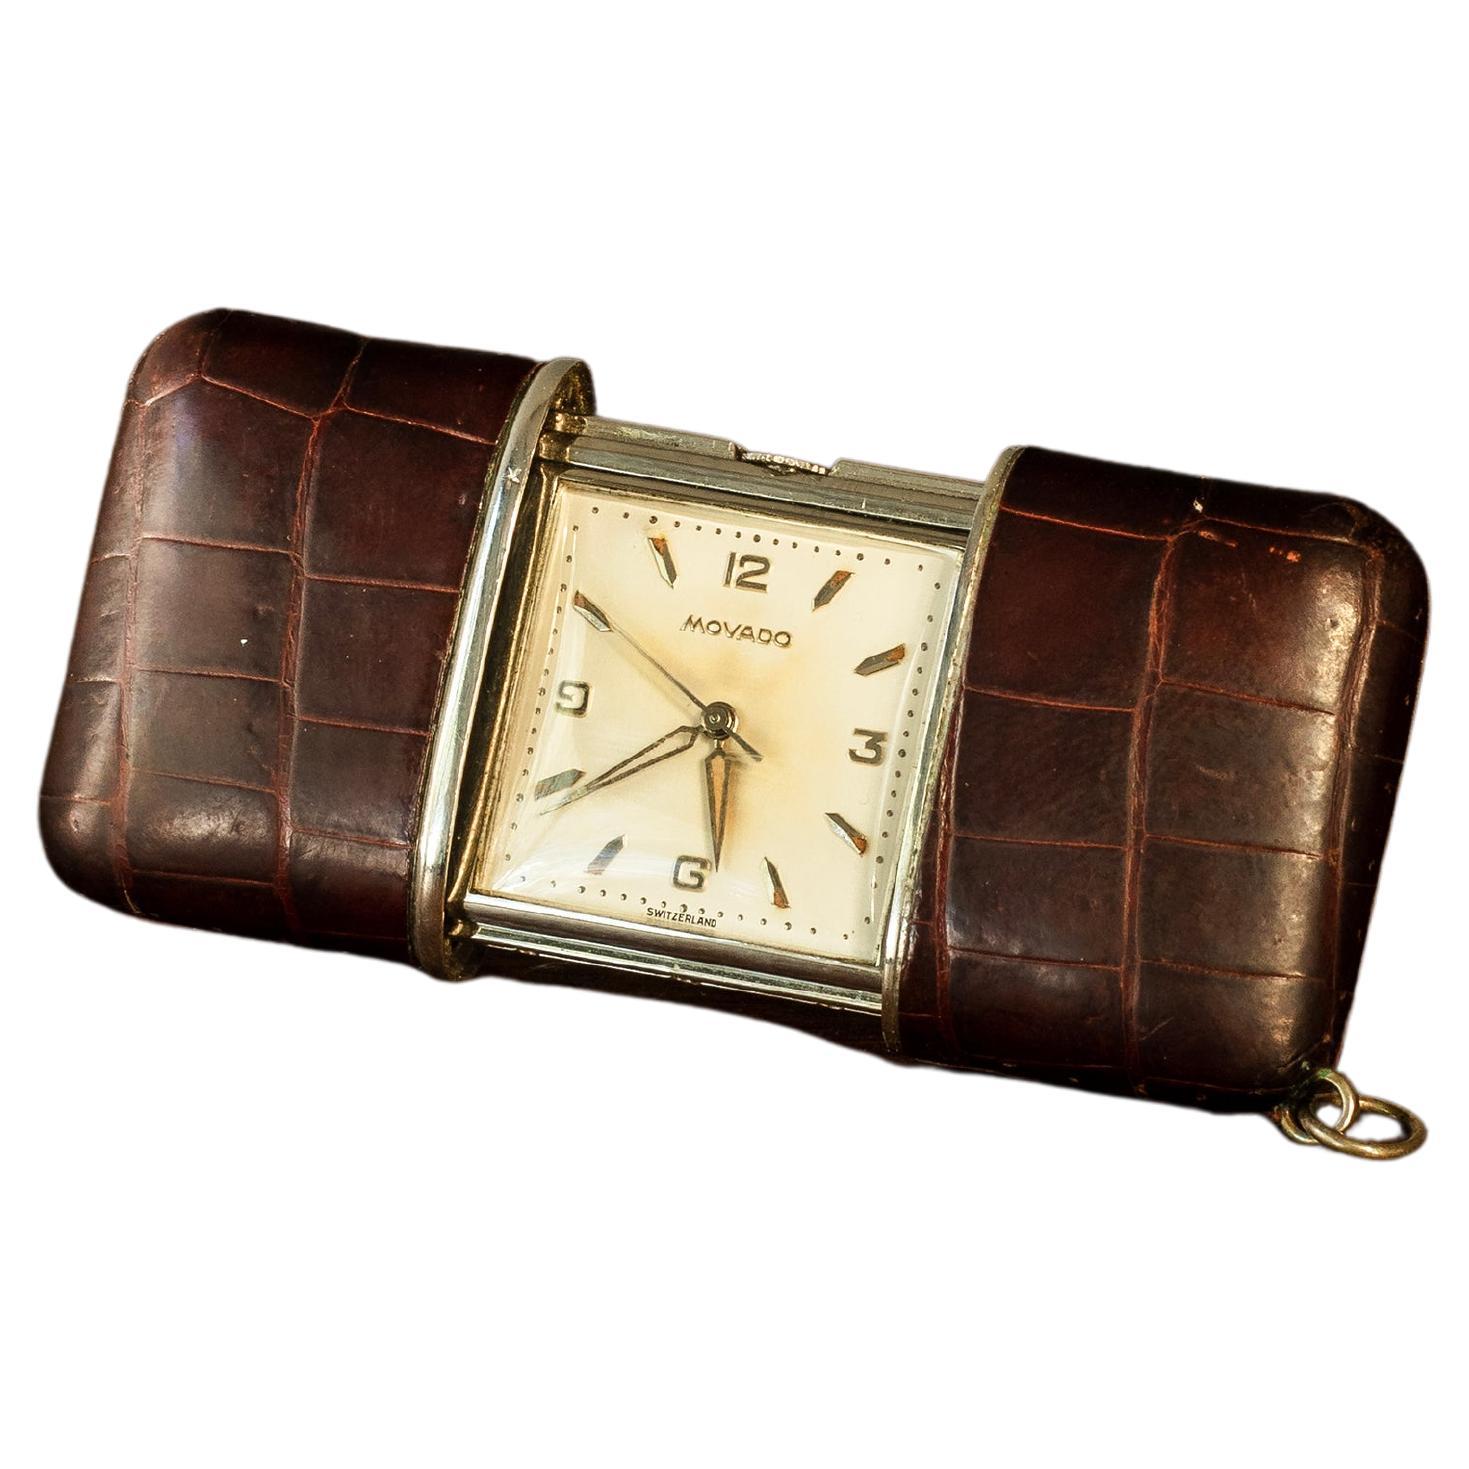  Horloge de voyage Movado années 1950